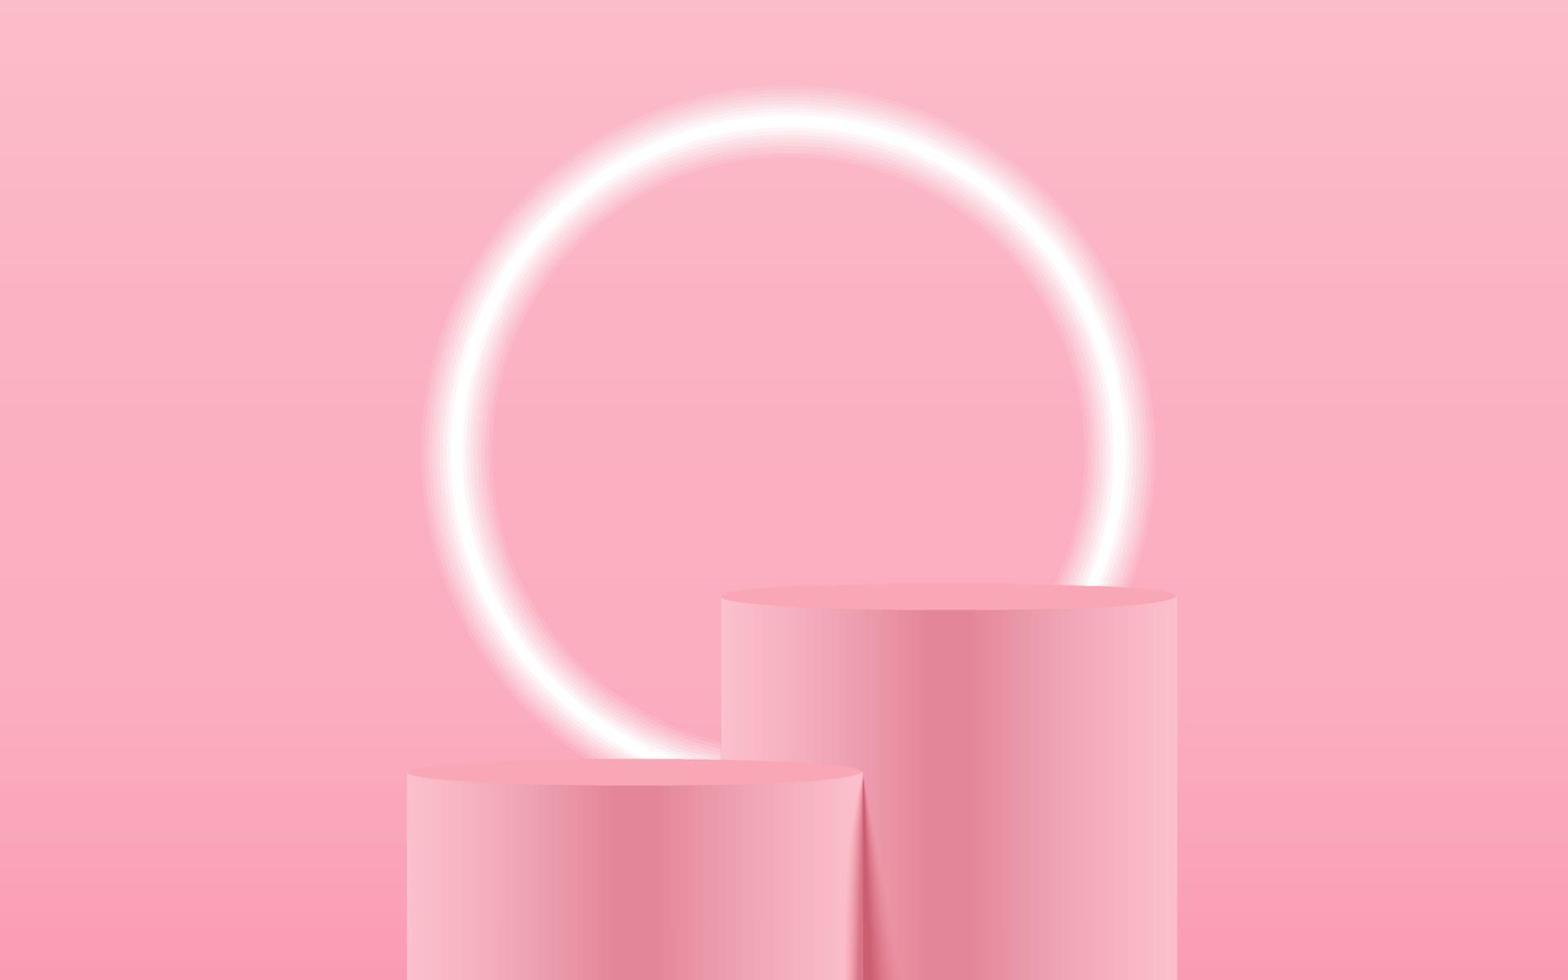 cena de passo de pódio de produto longo pastel rosa realista 2 isolada com luz de néon redonda sobre fundo branco. cena de simulação de cilindro. forma redonda geométrica para a marca do produto. ilustração vetorial 3D vetor